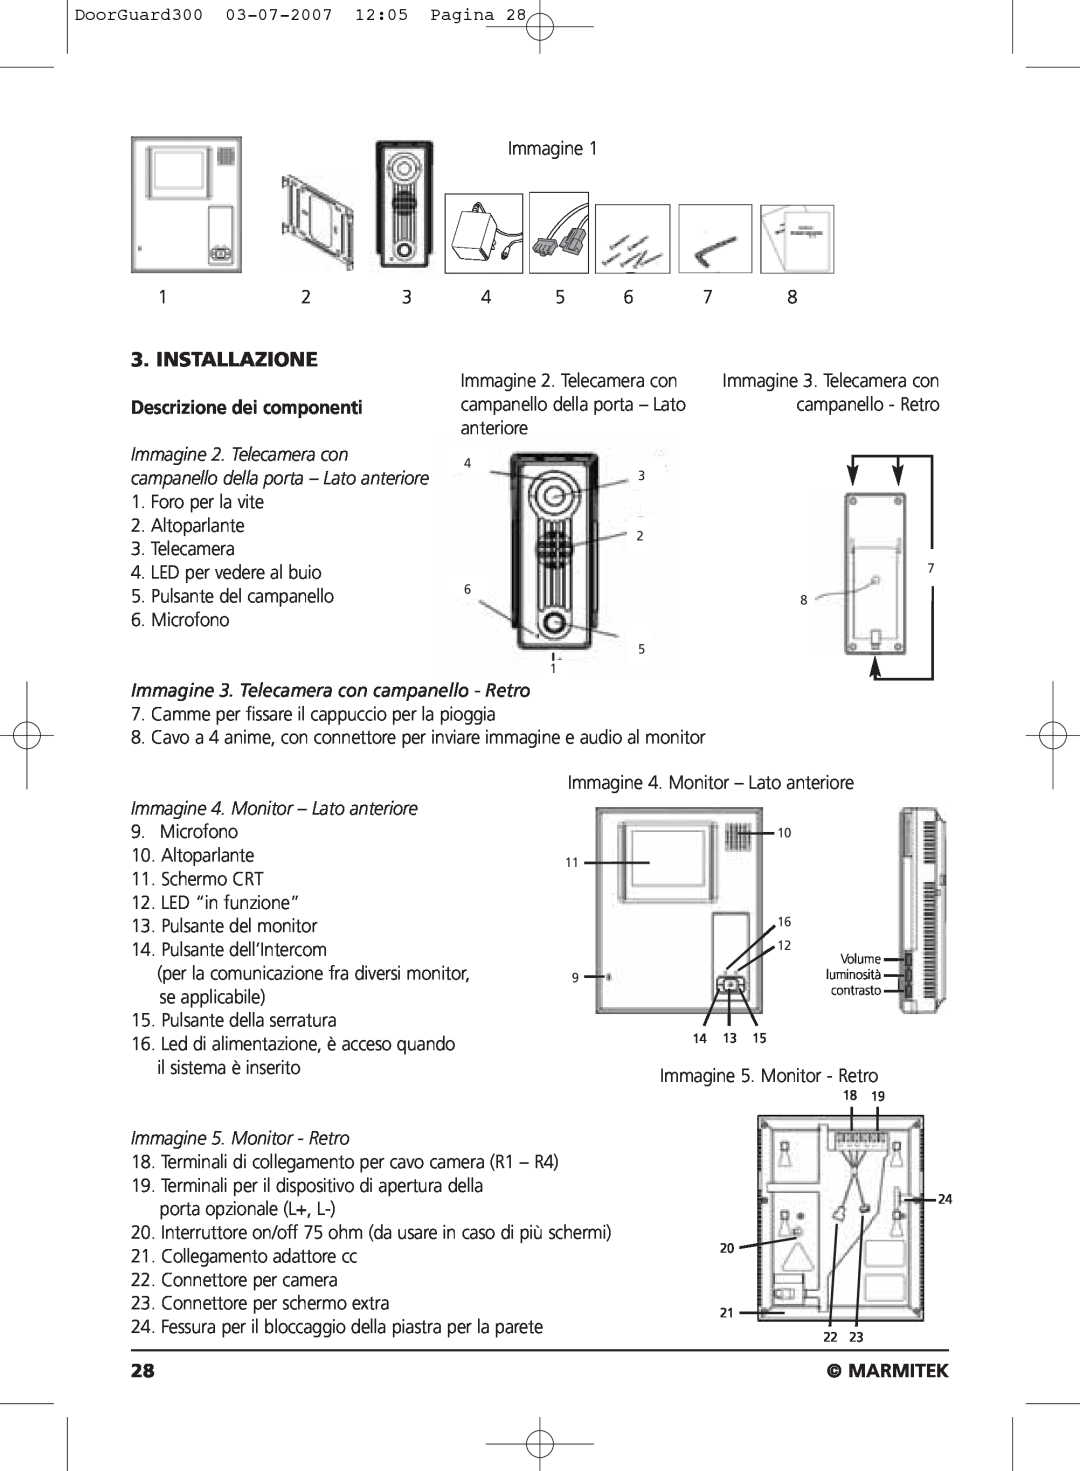 Marmitek DOORGUARD300TM user manual Installazione, Descrizione dei componenti, Marmitek 